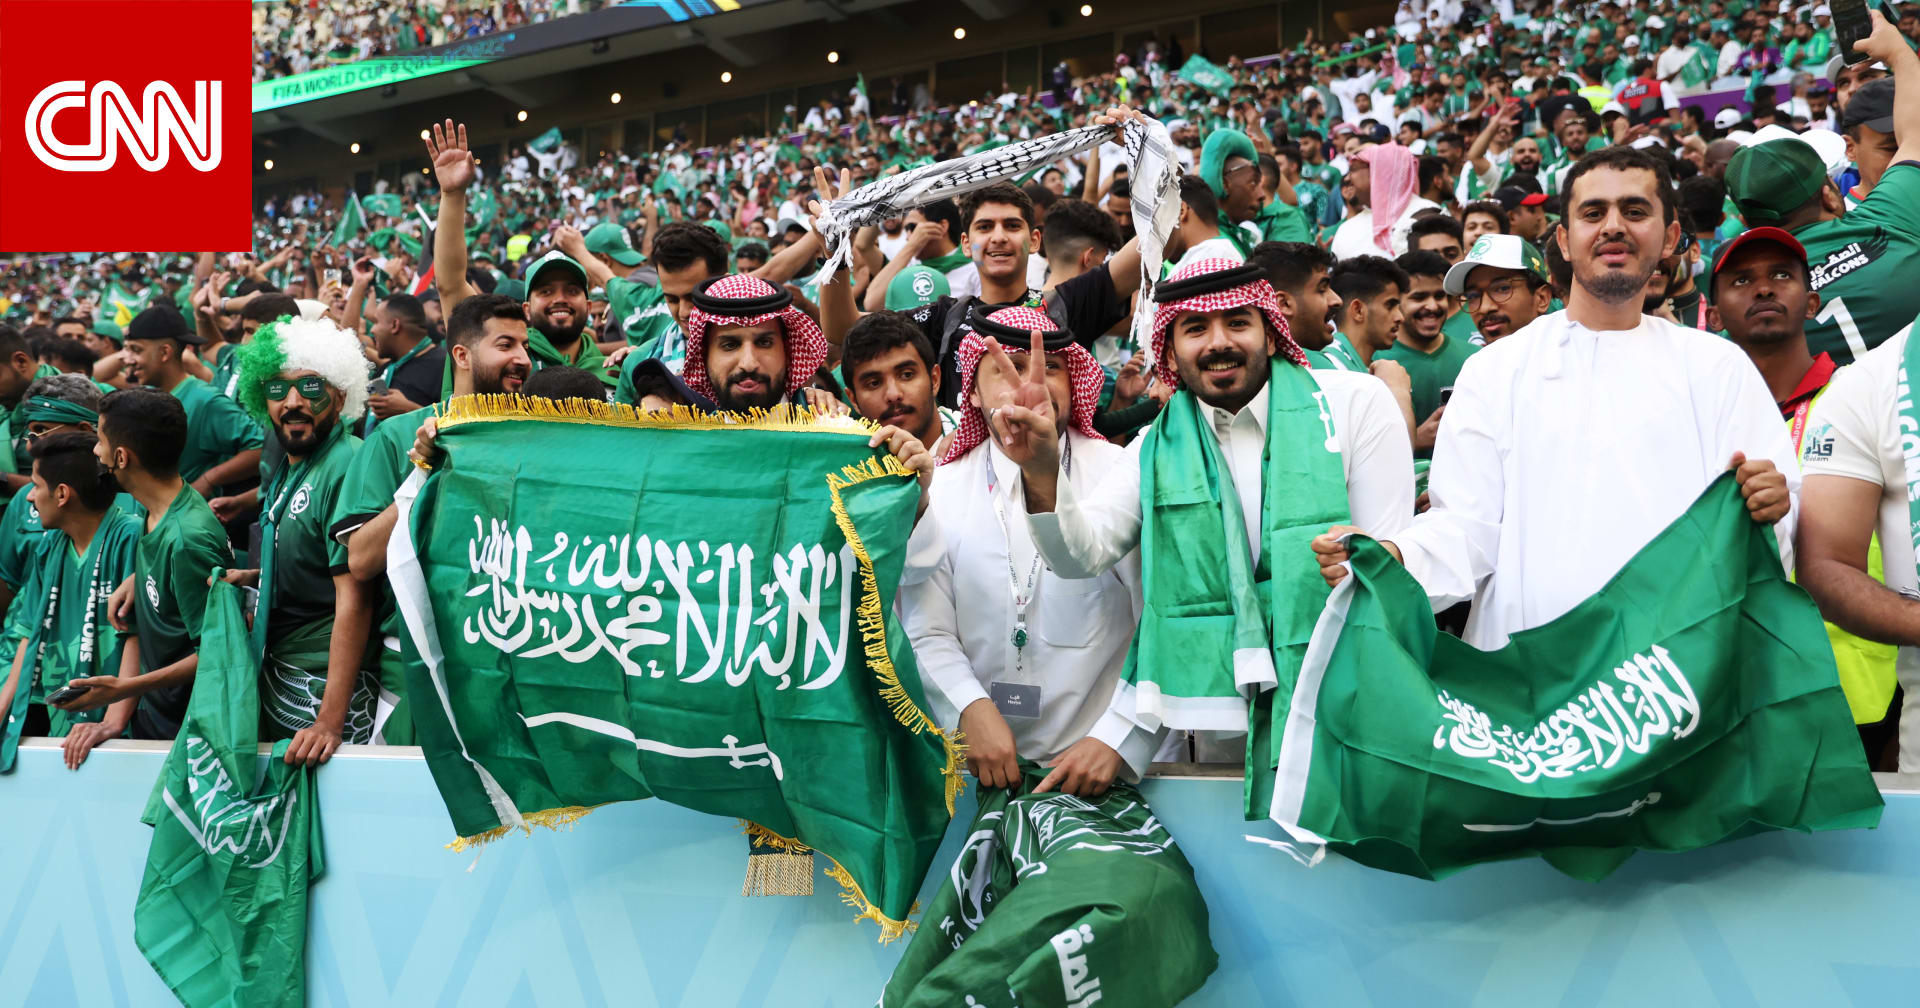 اتحاد كرة القدم السعودي يعلن مبادرة بشأن عائلتي الثنائي الراحل يوسف السالم وسالم مروان